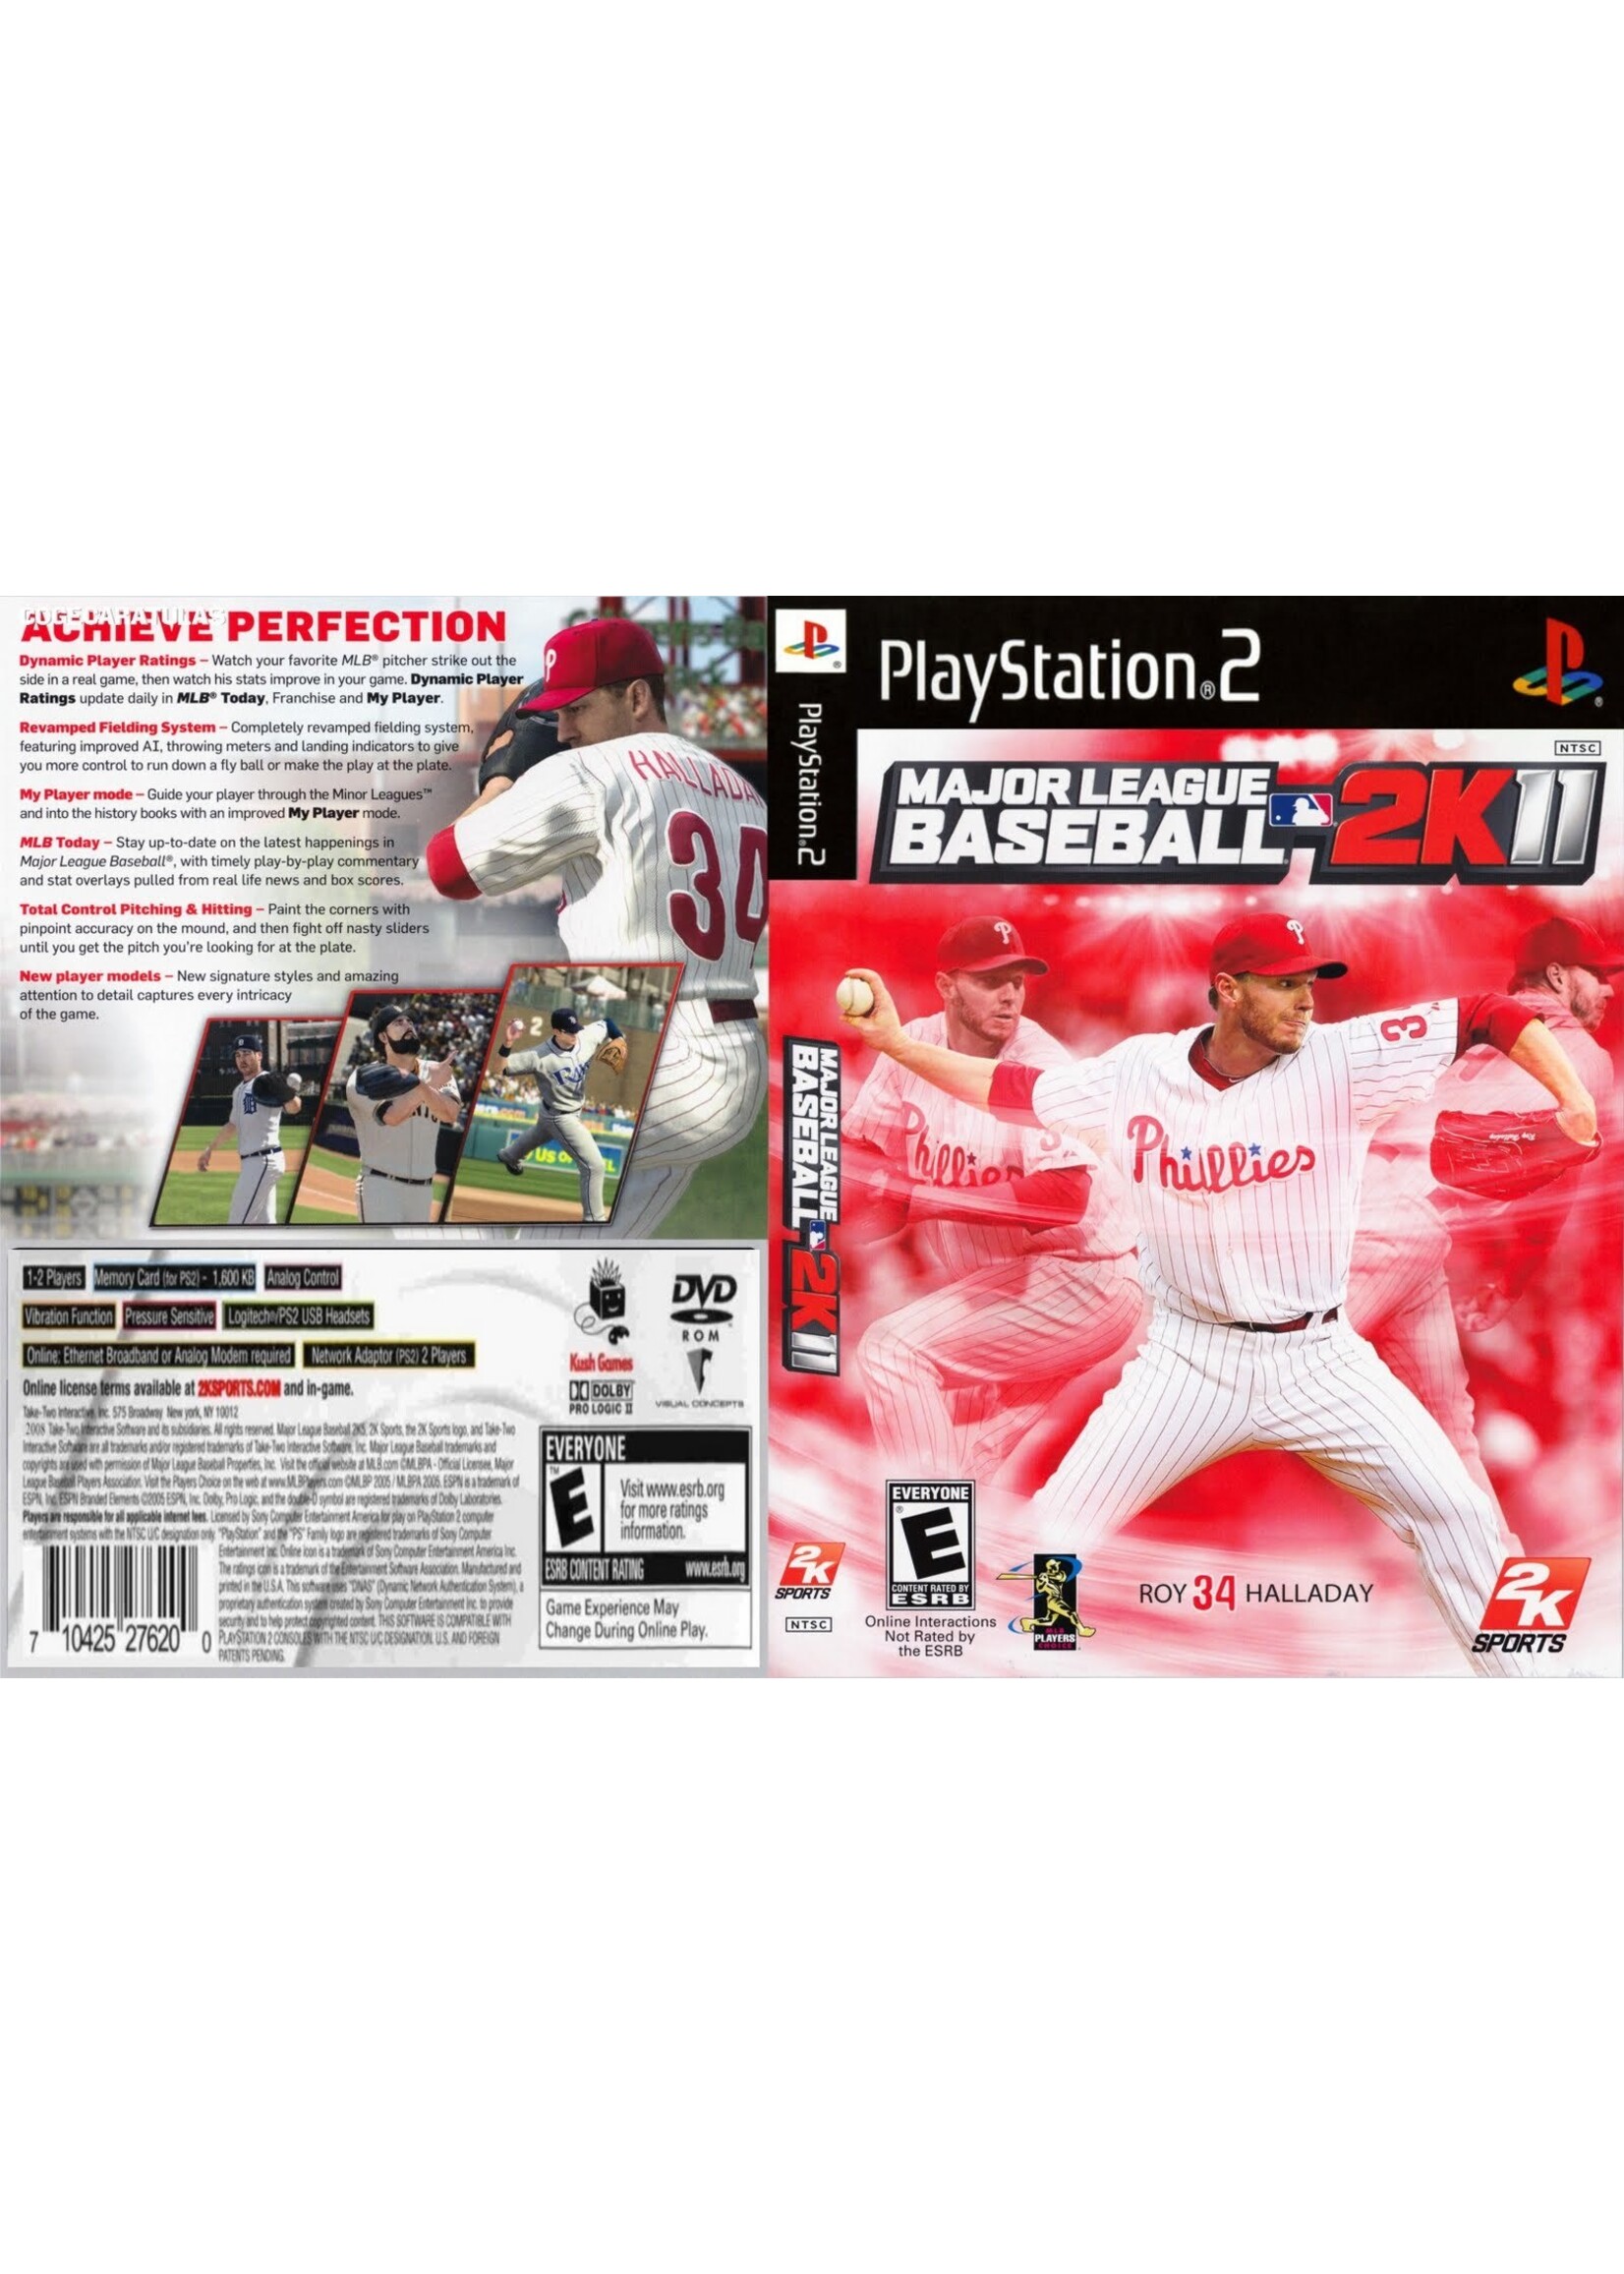 Sony Playstation 2 (PS2) Major League Baseball 2K11